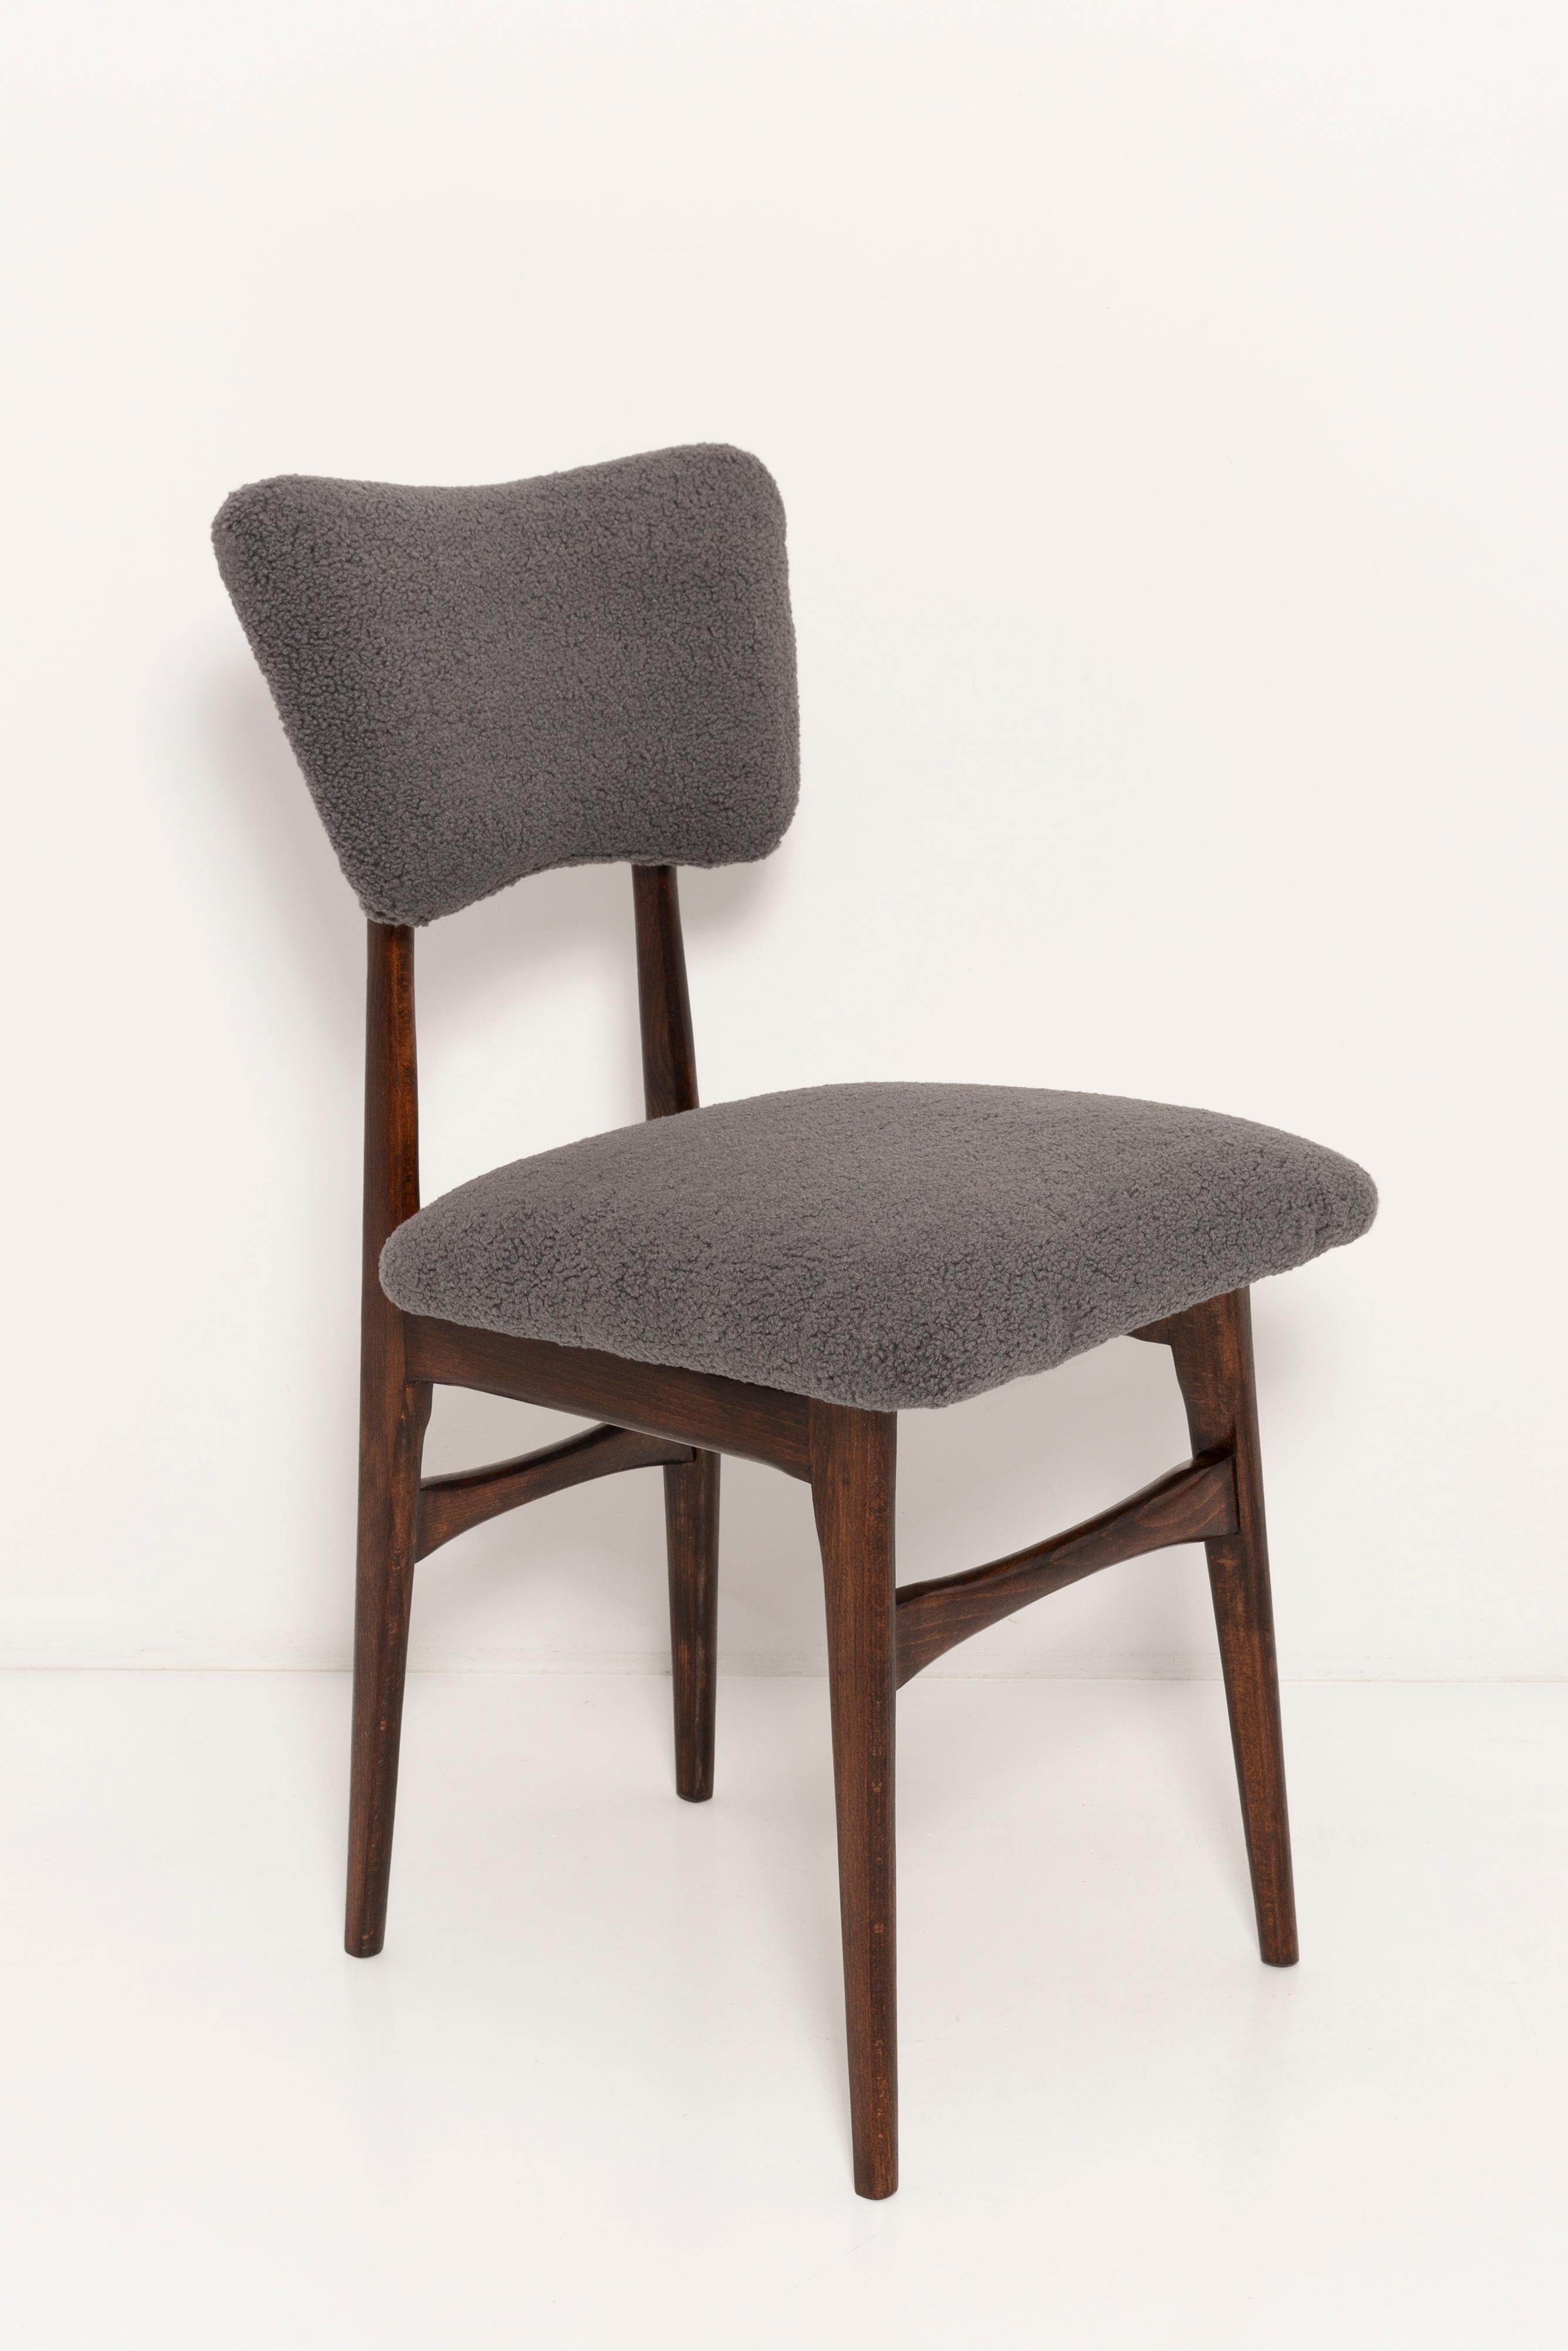 Chaises conçues par le professeur Rajmund Halas. Fabriqué en bois de hêtre. Les chaises ont été entièrement rénovées et les boiseries ont été rafraîchies. L'assise et le dossier sont habillés de tissu bouclé gris foncé (couleur 07), durable et